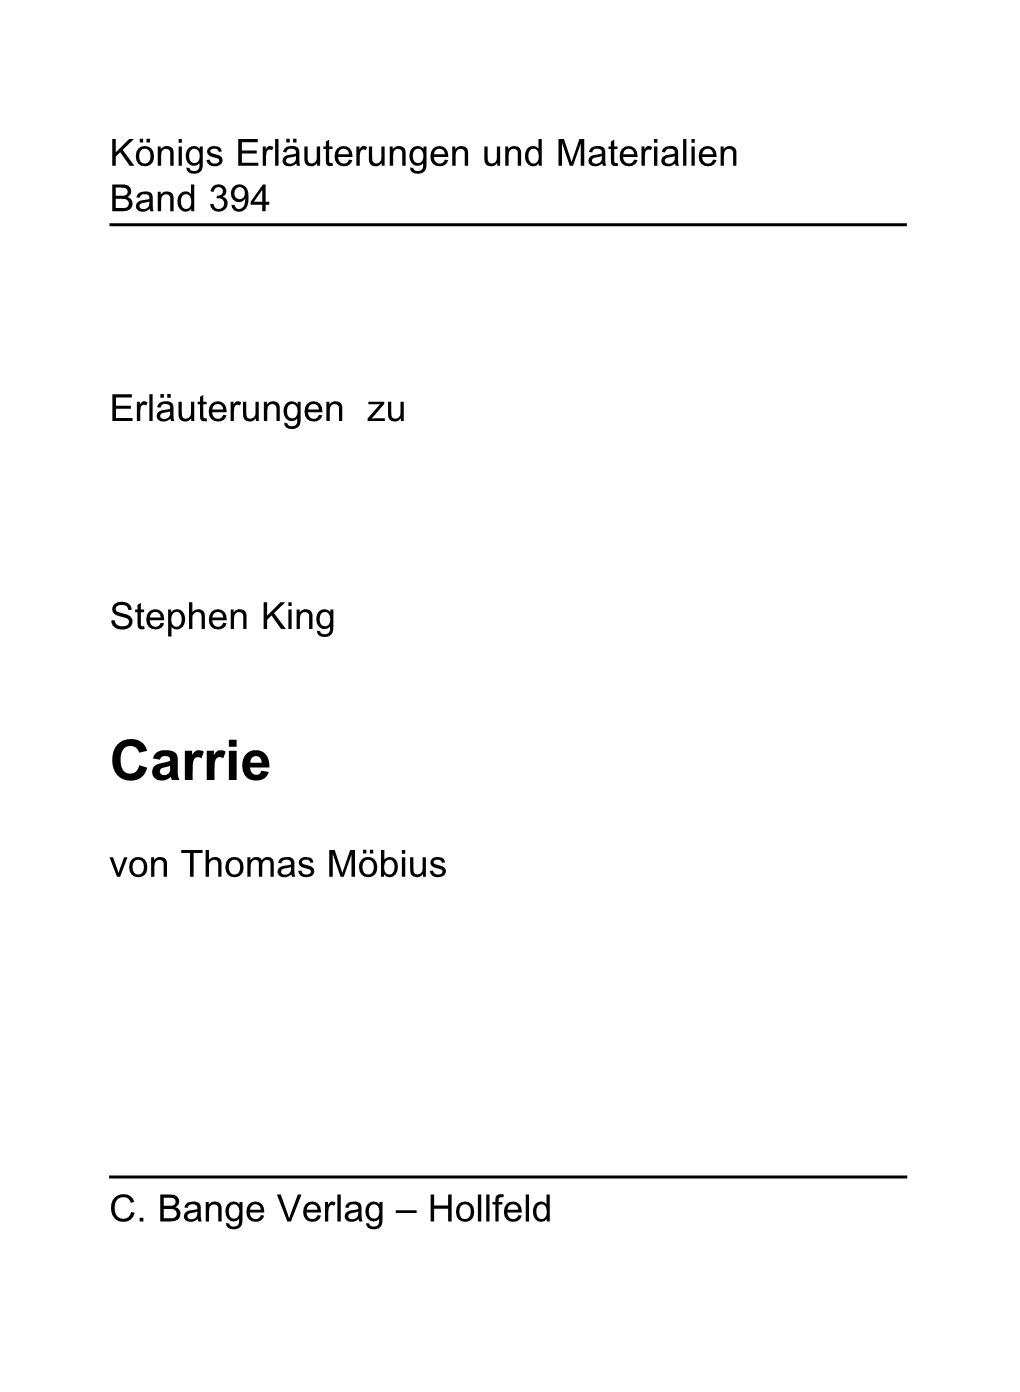 Carrie Von Thomas Möbius